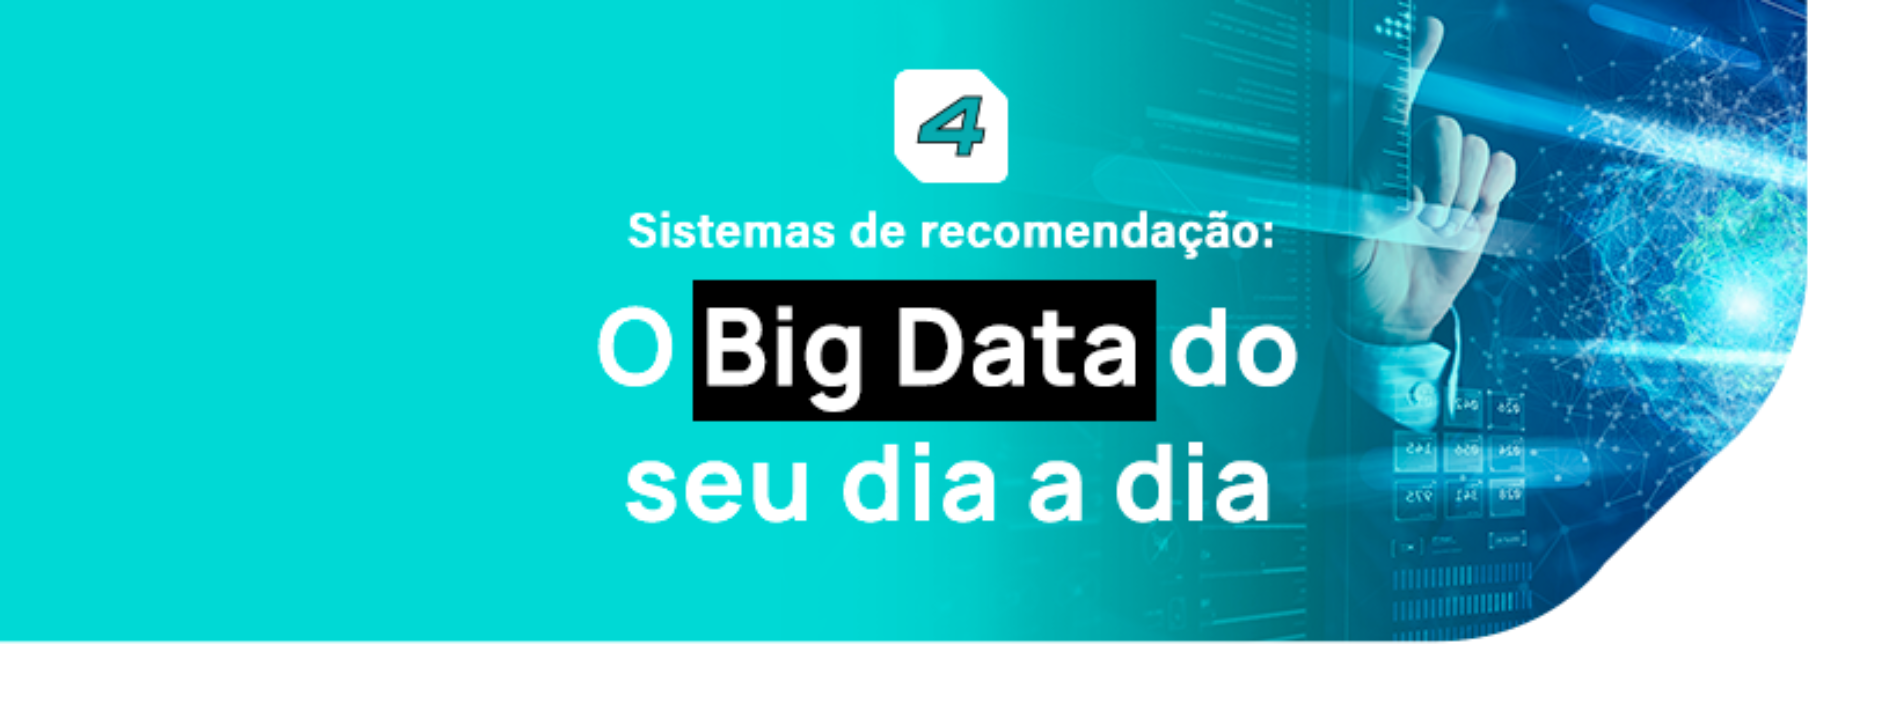 Sistemas de recomendação: o Big Data do dia a dia